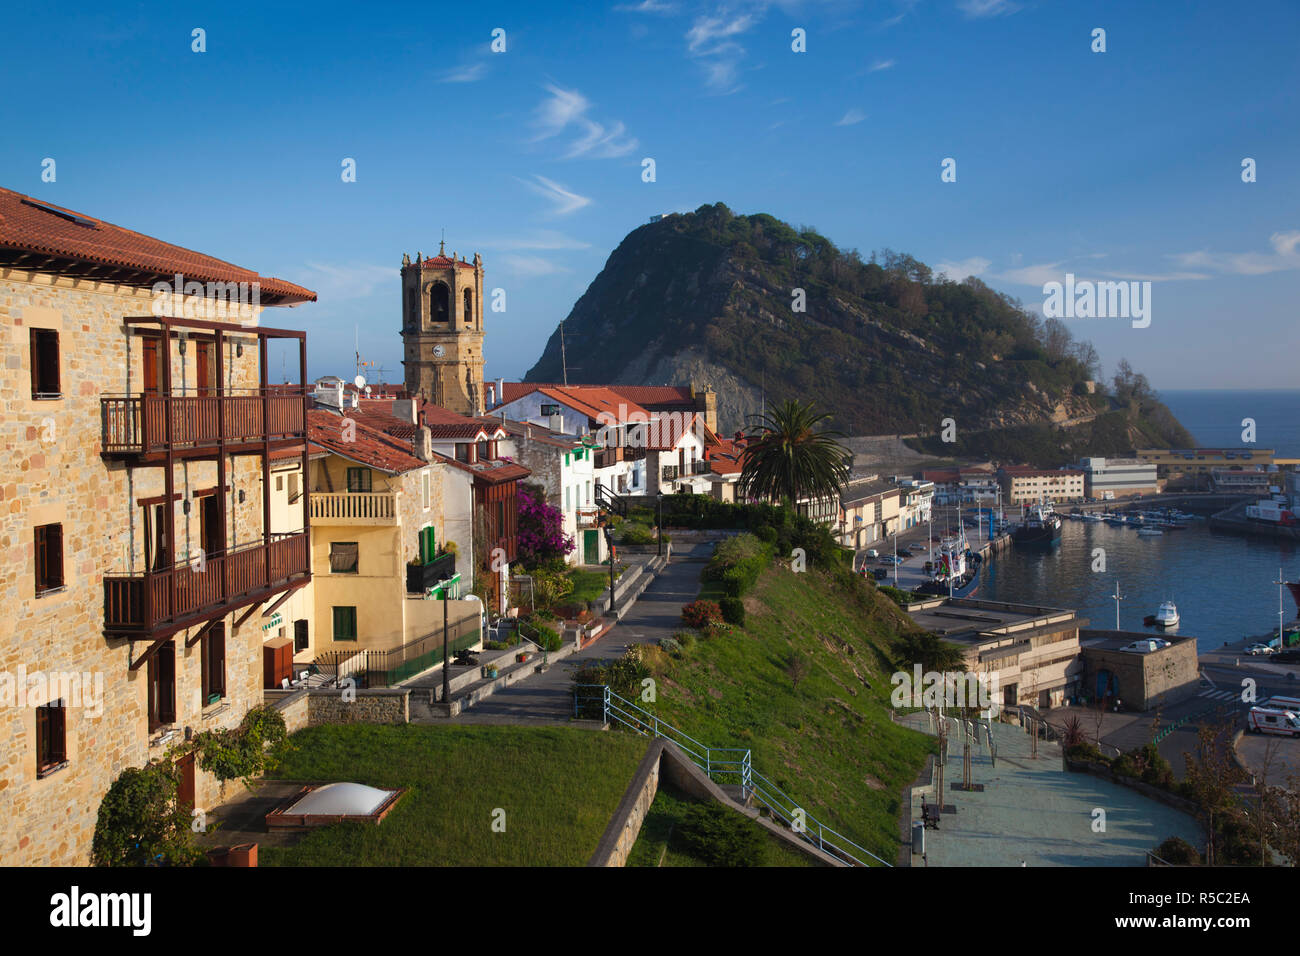 Spain, Basque Country Region, Guipuzcoa Province, Getaria, Iglesia de San Salvador church, and Monte de San Anton rock Stock Photo